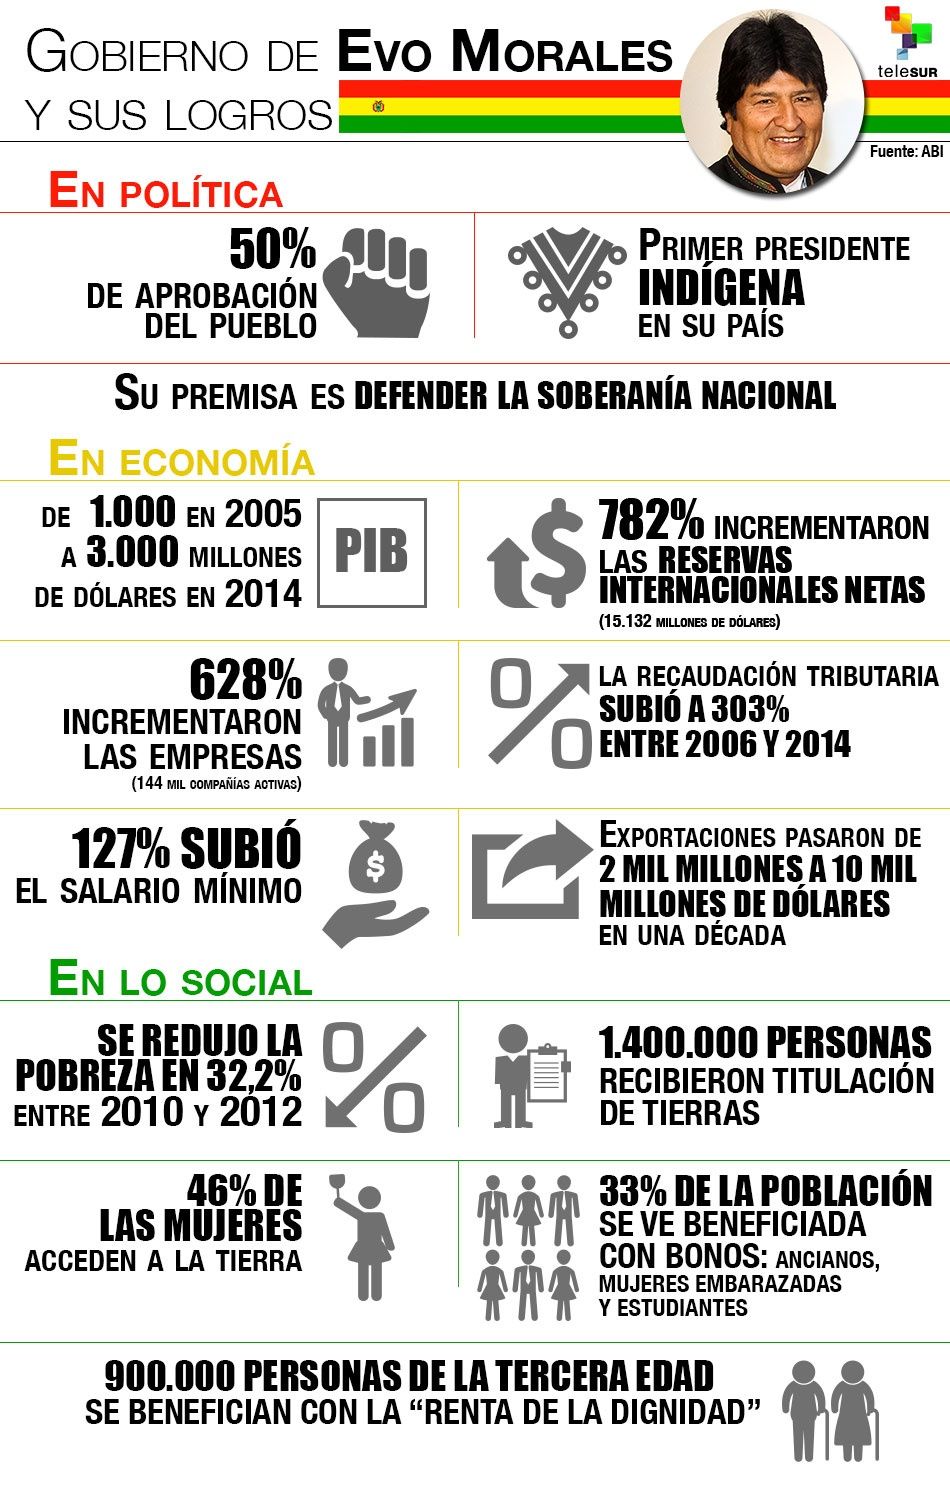 Gobierno de Evo Morales y sus logros